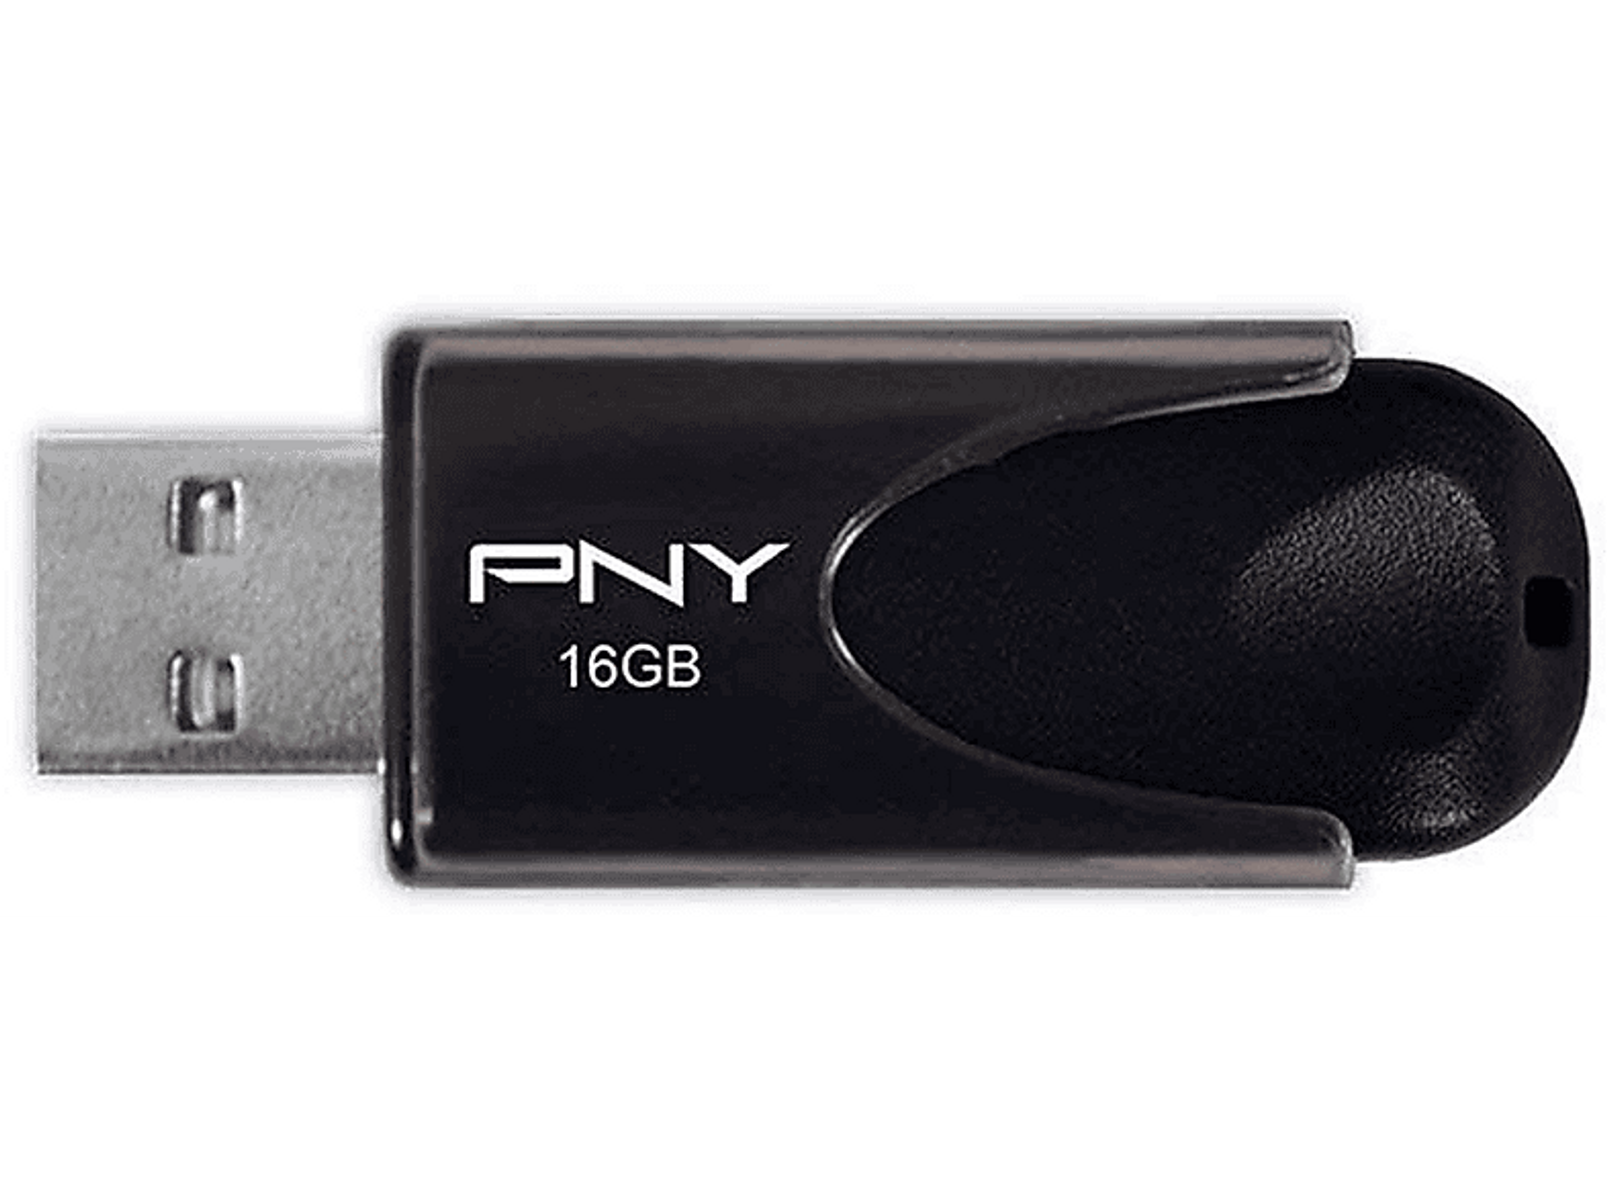 PNY STICK PNY Attaché 4 2.0 GB) (Schwarz, 16GB USB-Flash-Laufwerk 16